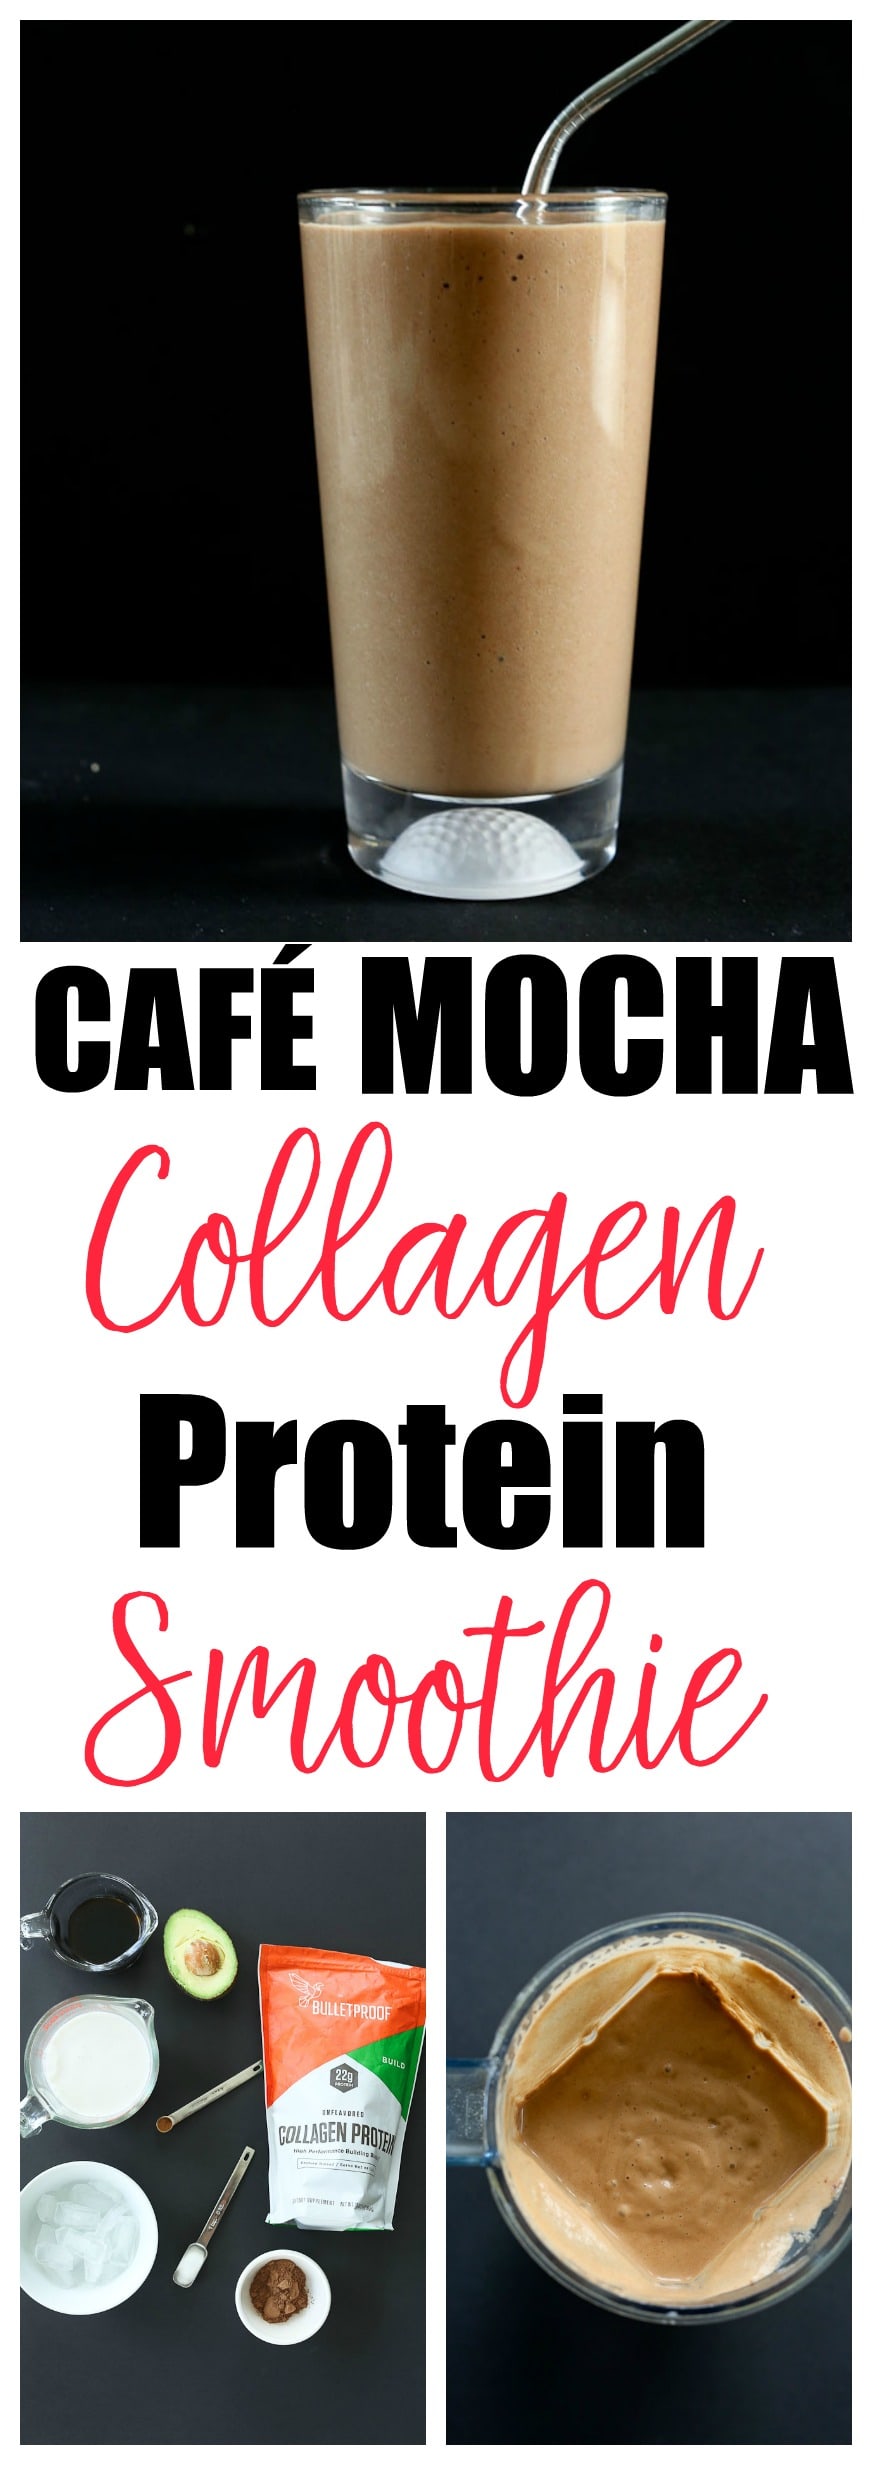 Café Mocha Collagen Protein Smoothie. NO sugar, LOW carb, Paleo, gluten-free #healthysmoothie #proteinsmoothie